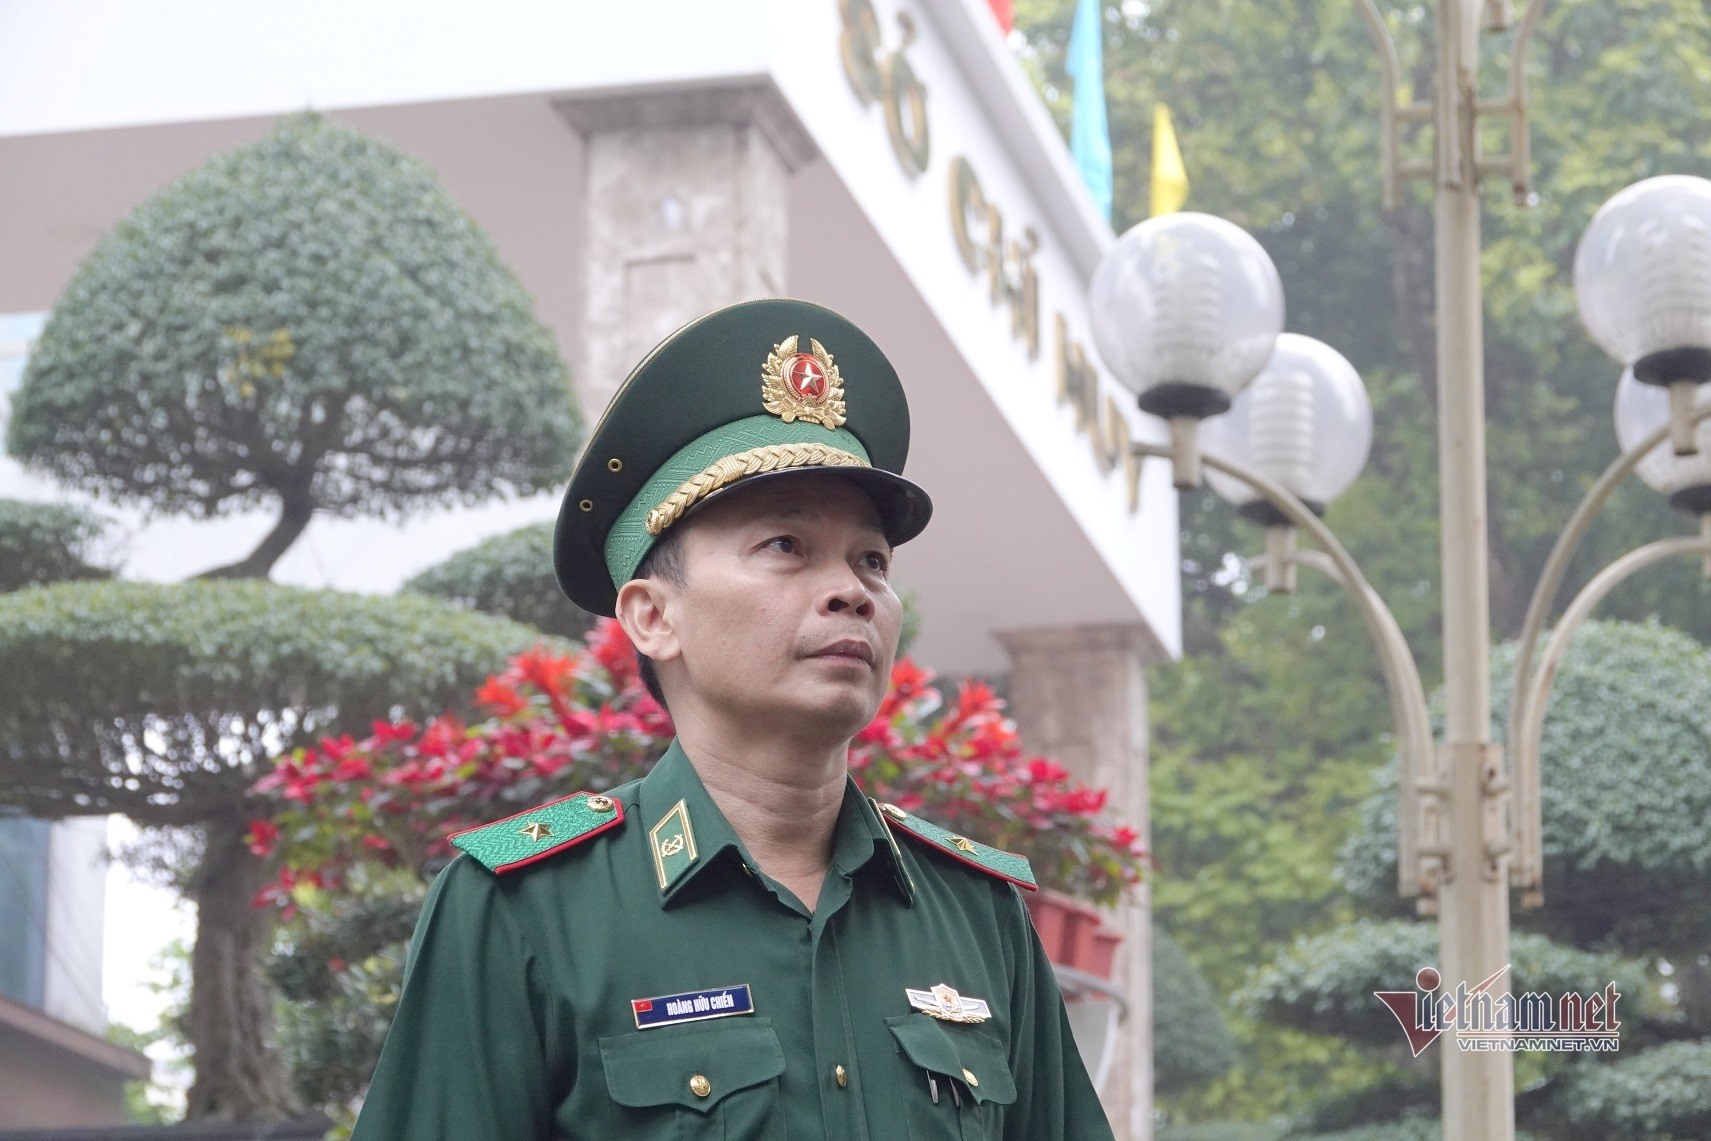 Thiếu tướng Hoàng Hữu Chiến, Phó Tham mưu trưởng Bộ đội Biên phòng. Ảnh: Sơn Khang